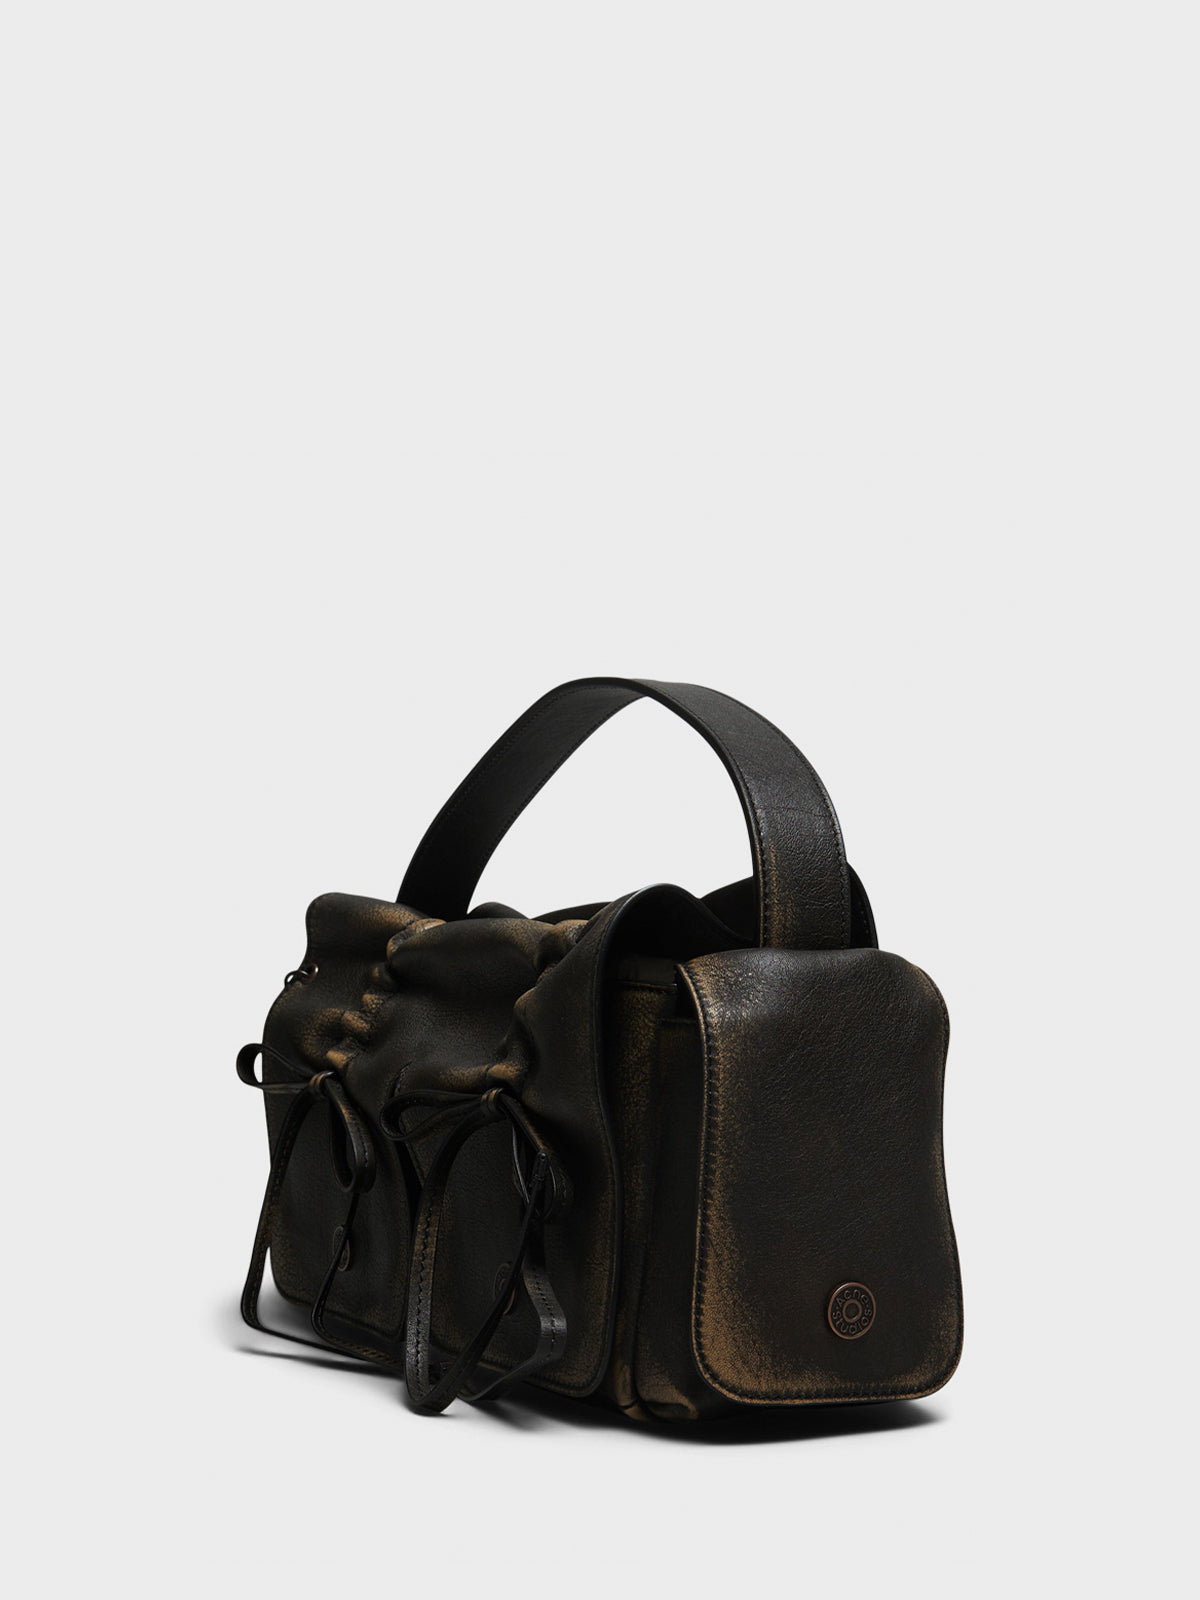 Multipocket Vintage Bag in Dark Brown and Beige